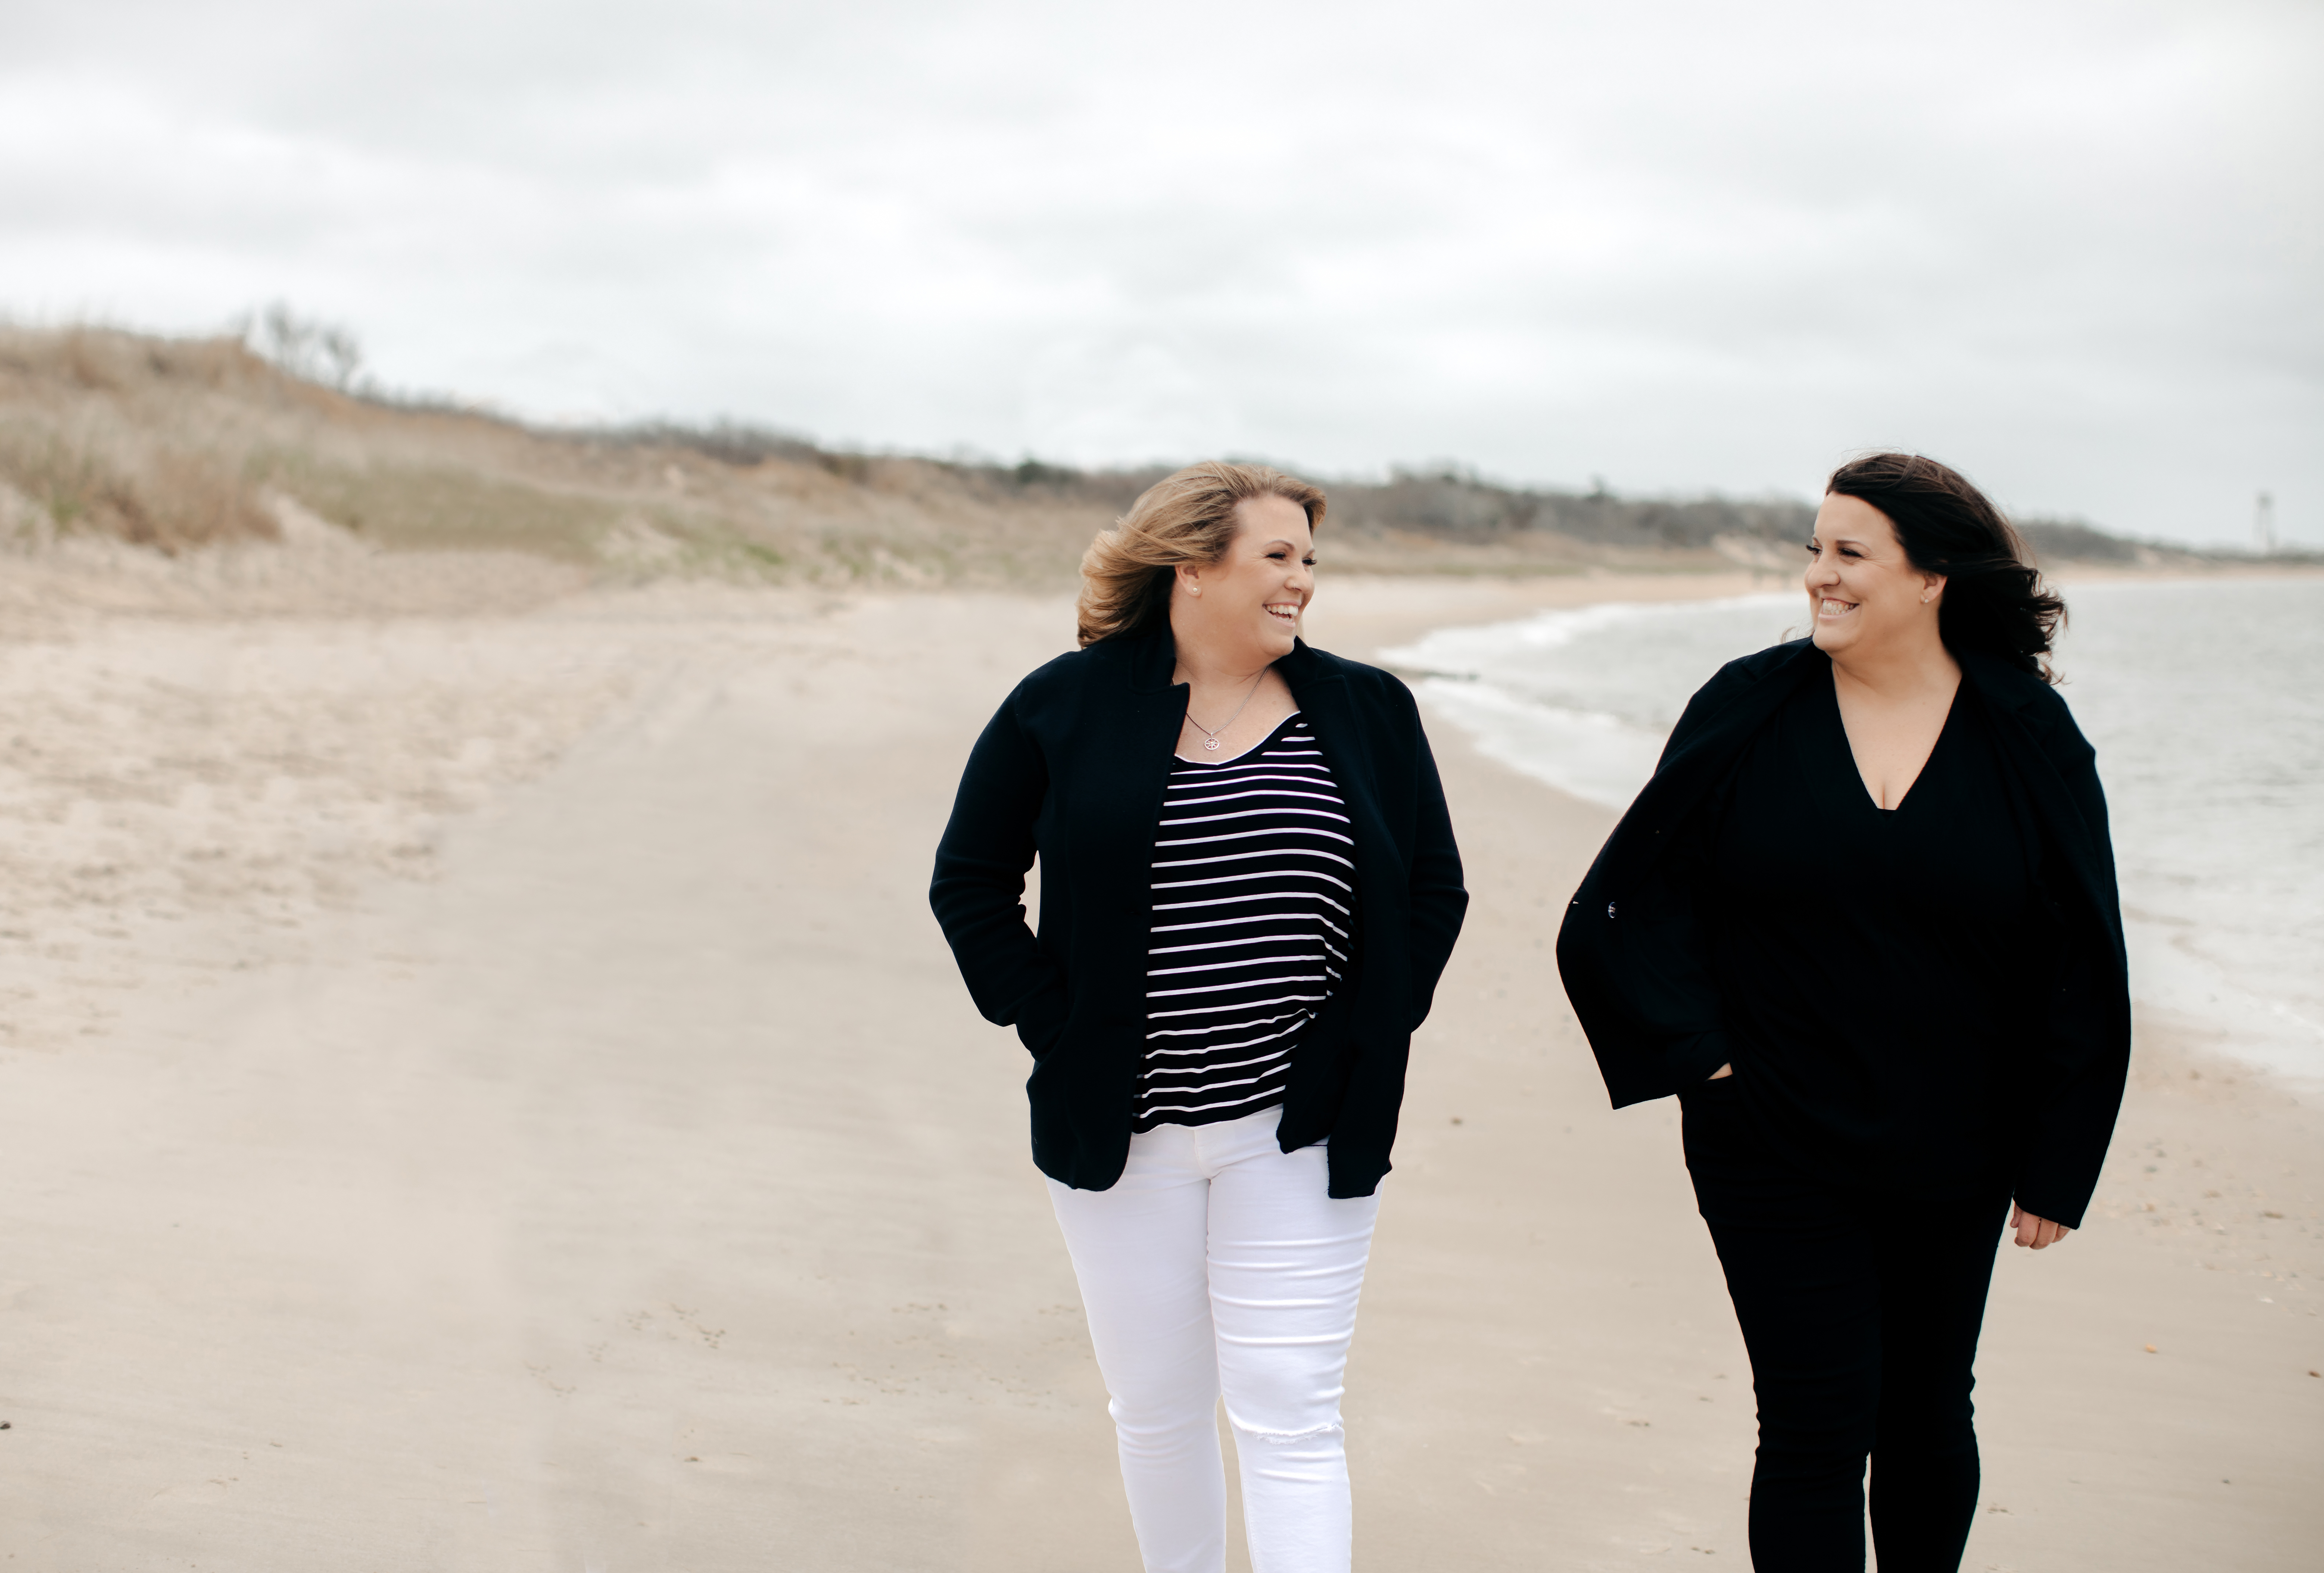 Two women walking on a beach near the ocean